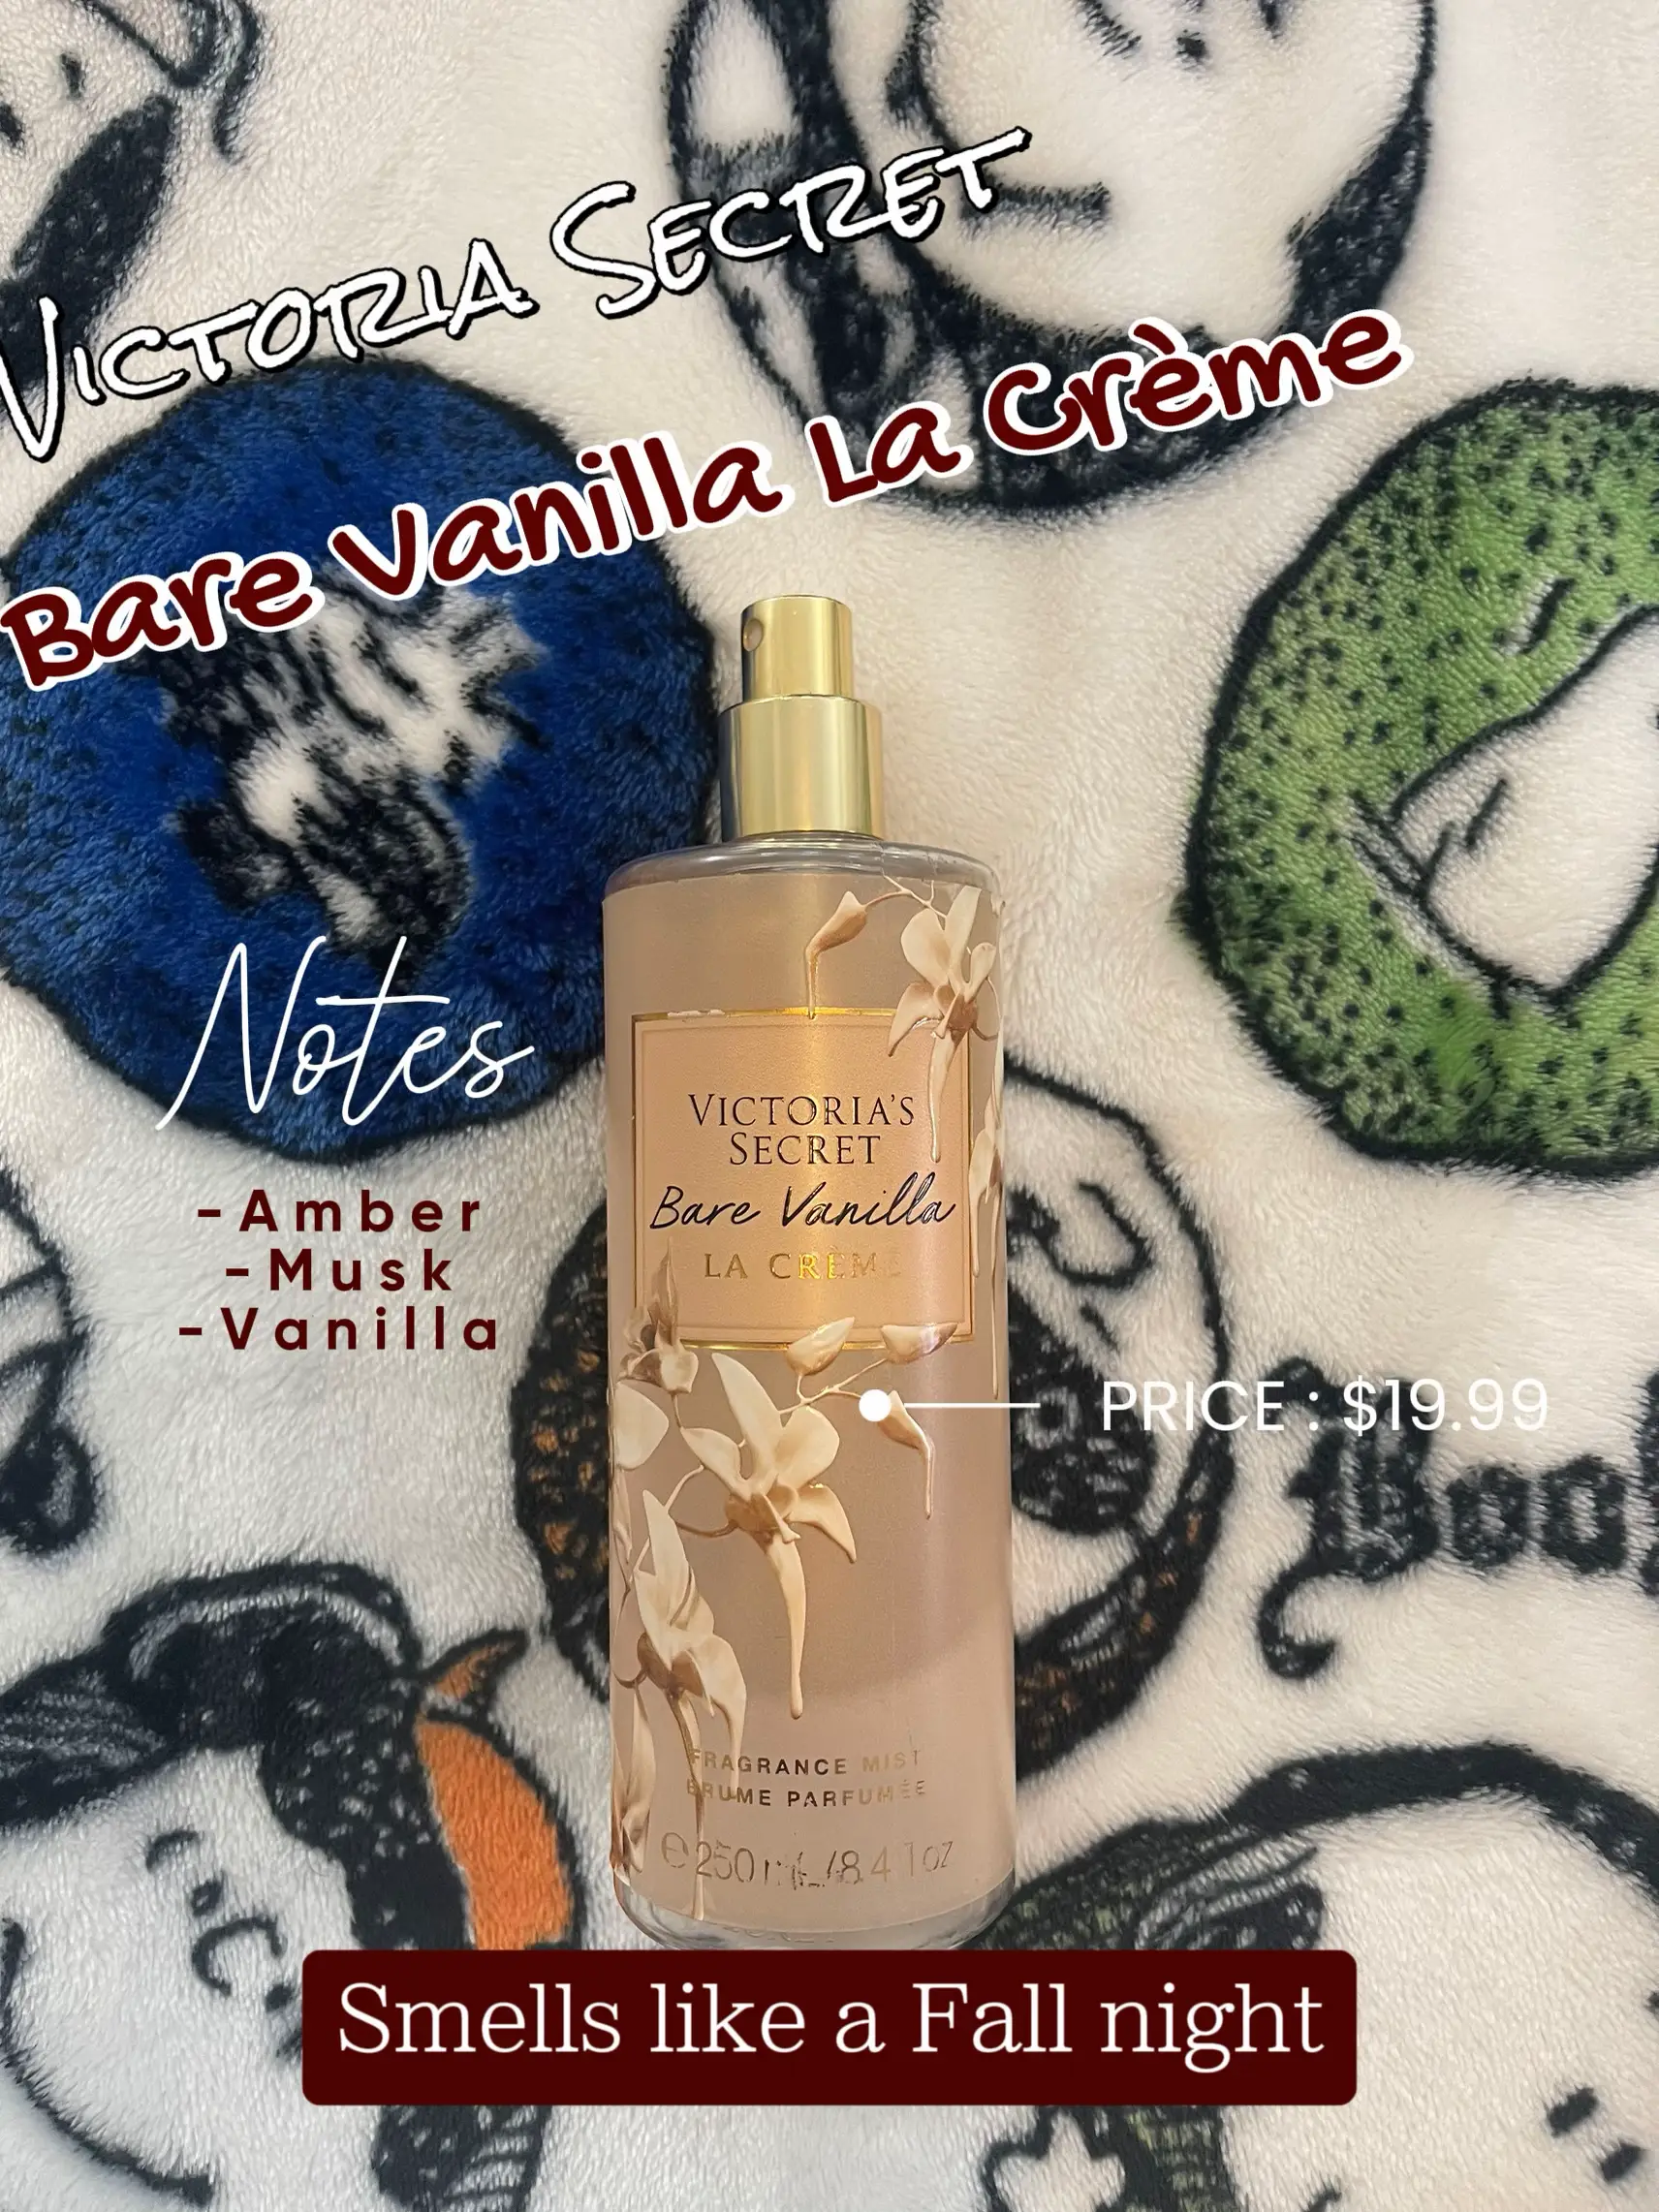 Victoria's Secret Bare Vanilla La Creme by Victori - Women